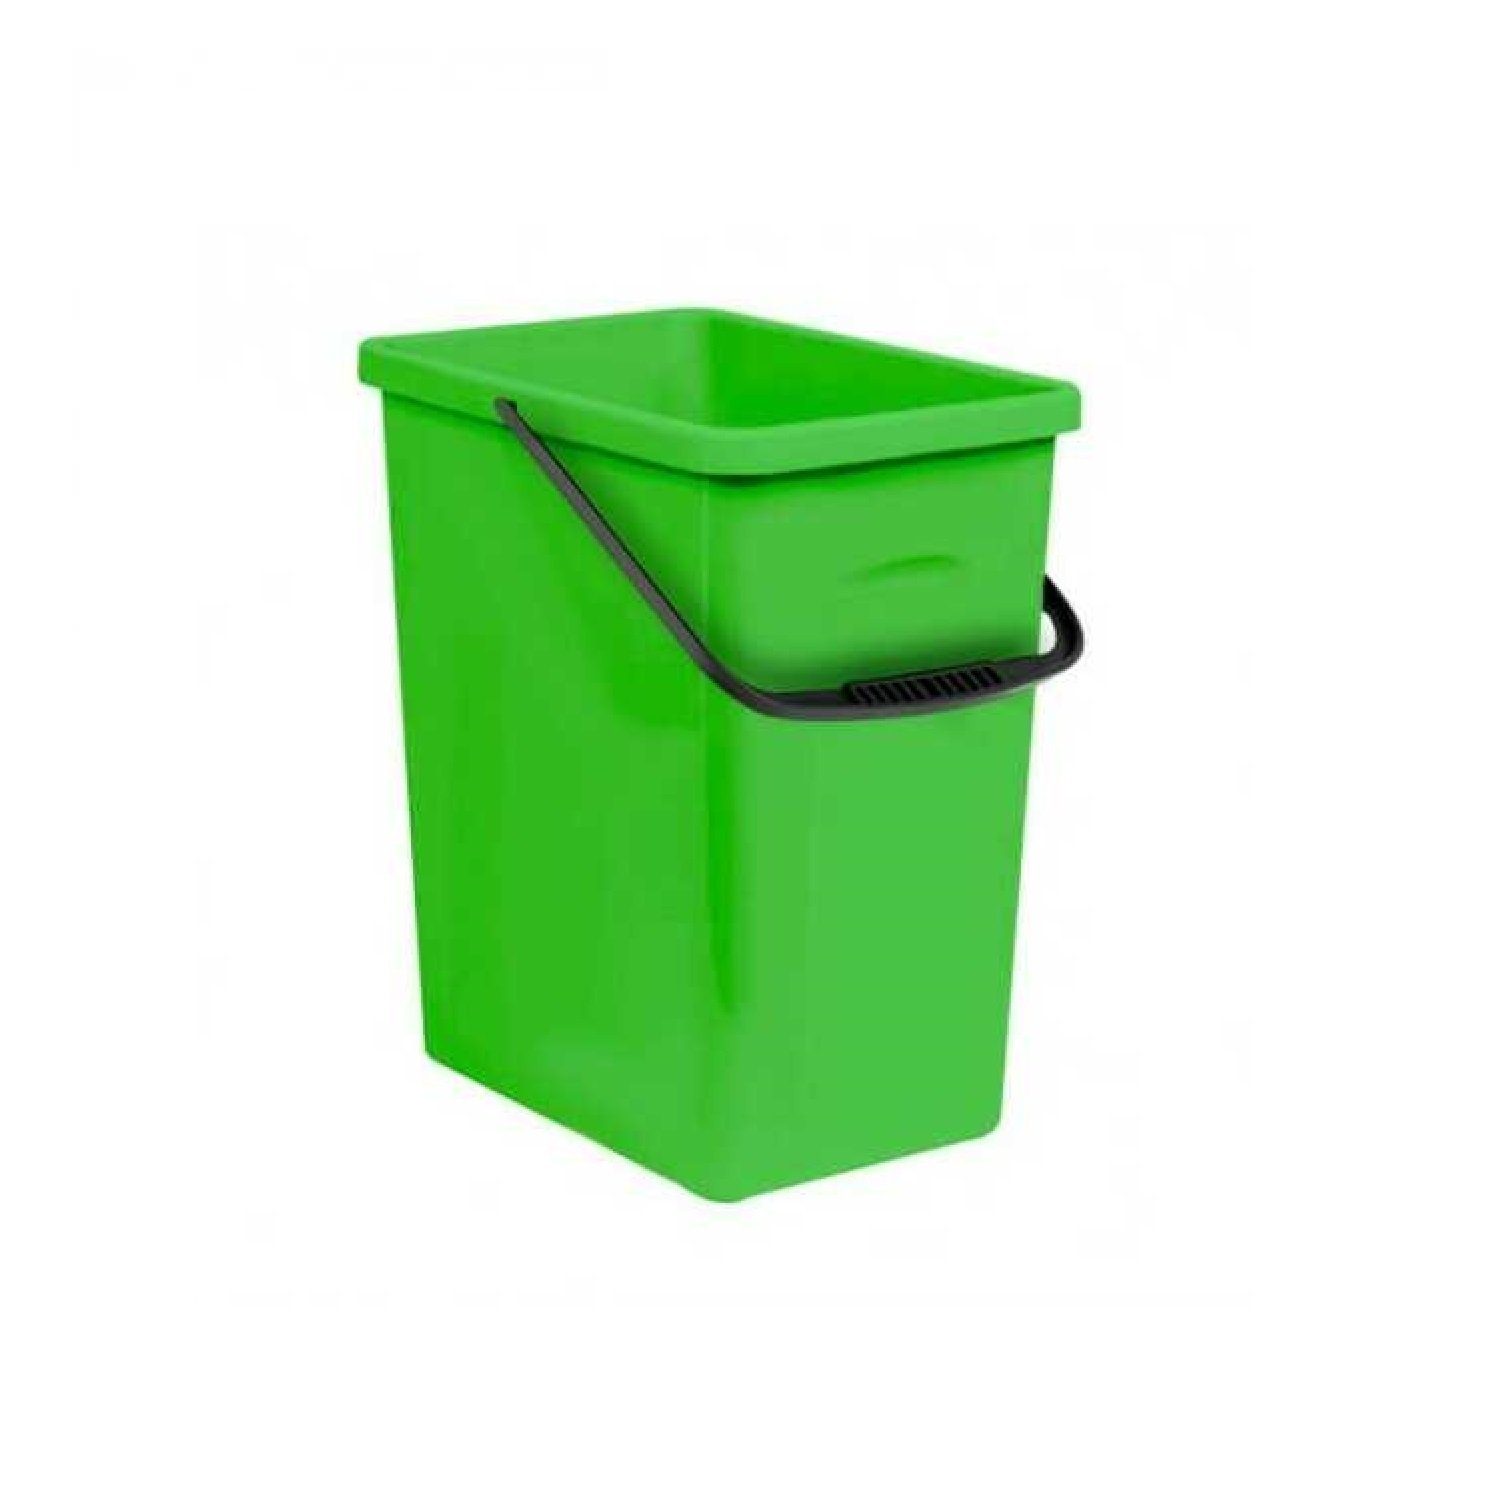 Mülleimer, mit praktischem Tragegriff; 10 Liter Fassungsvermögen